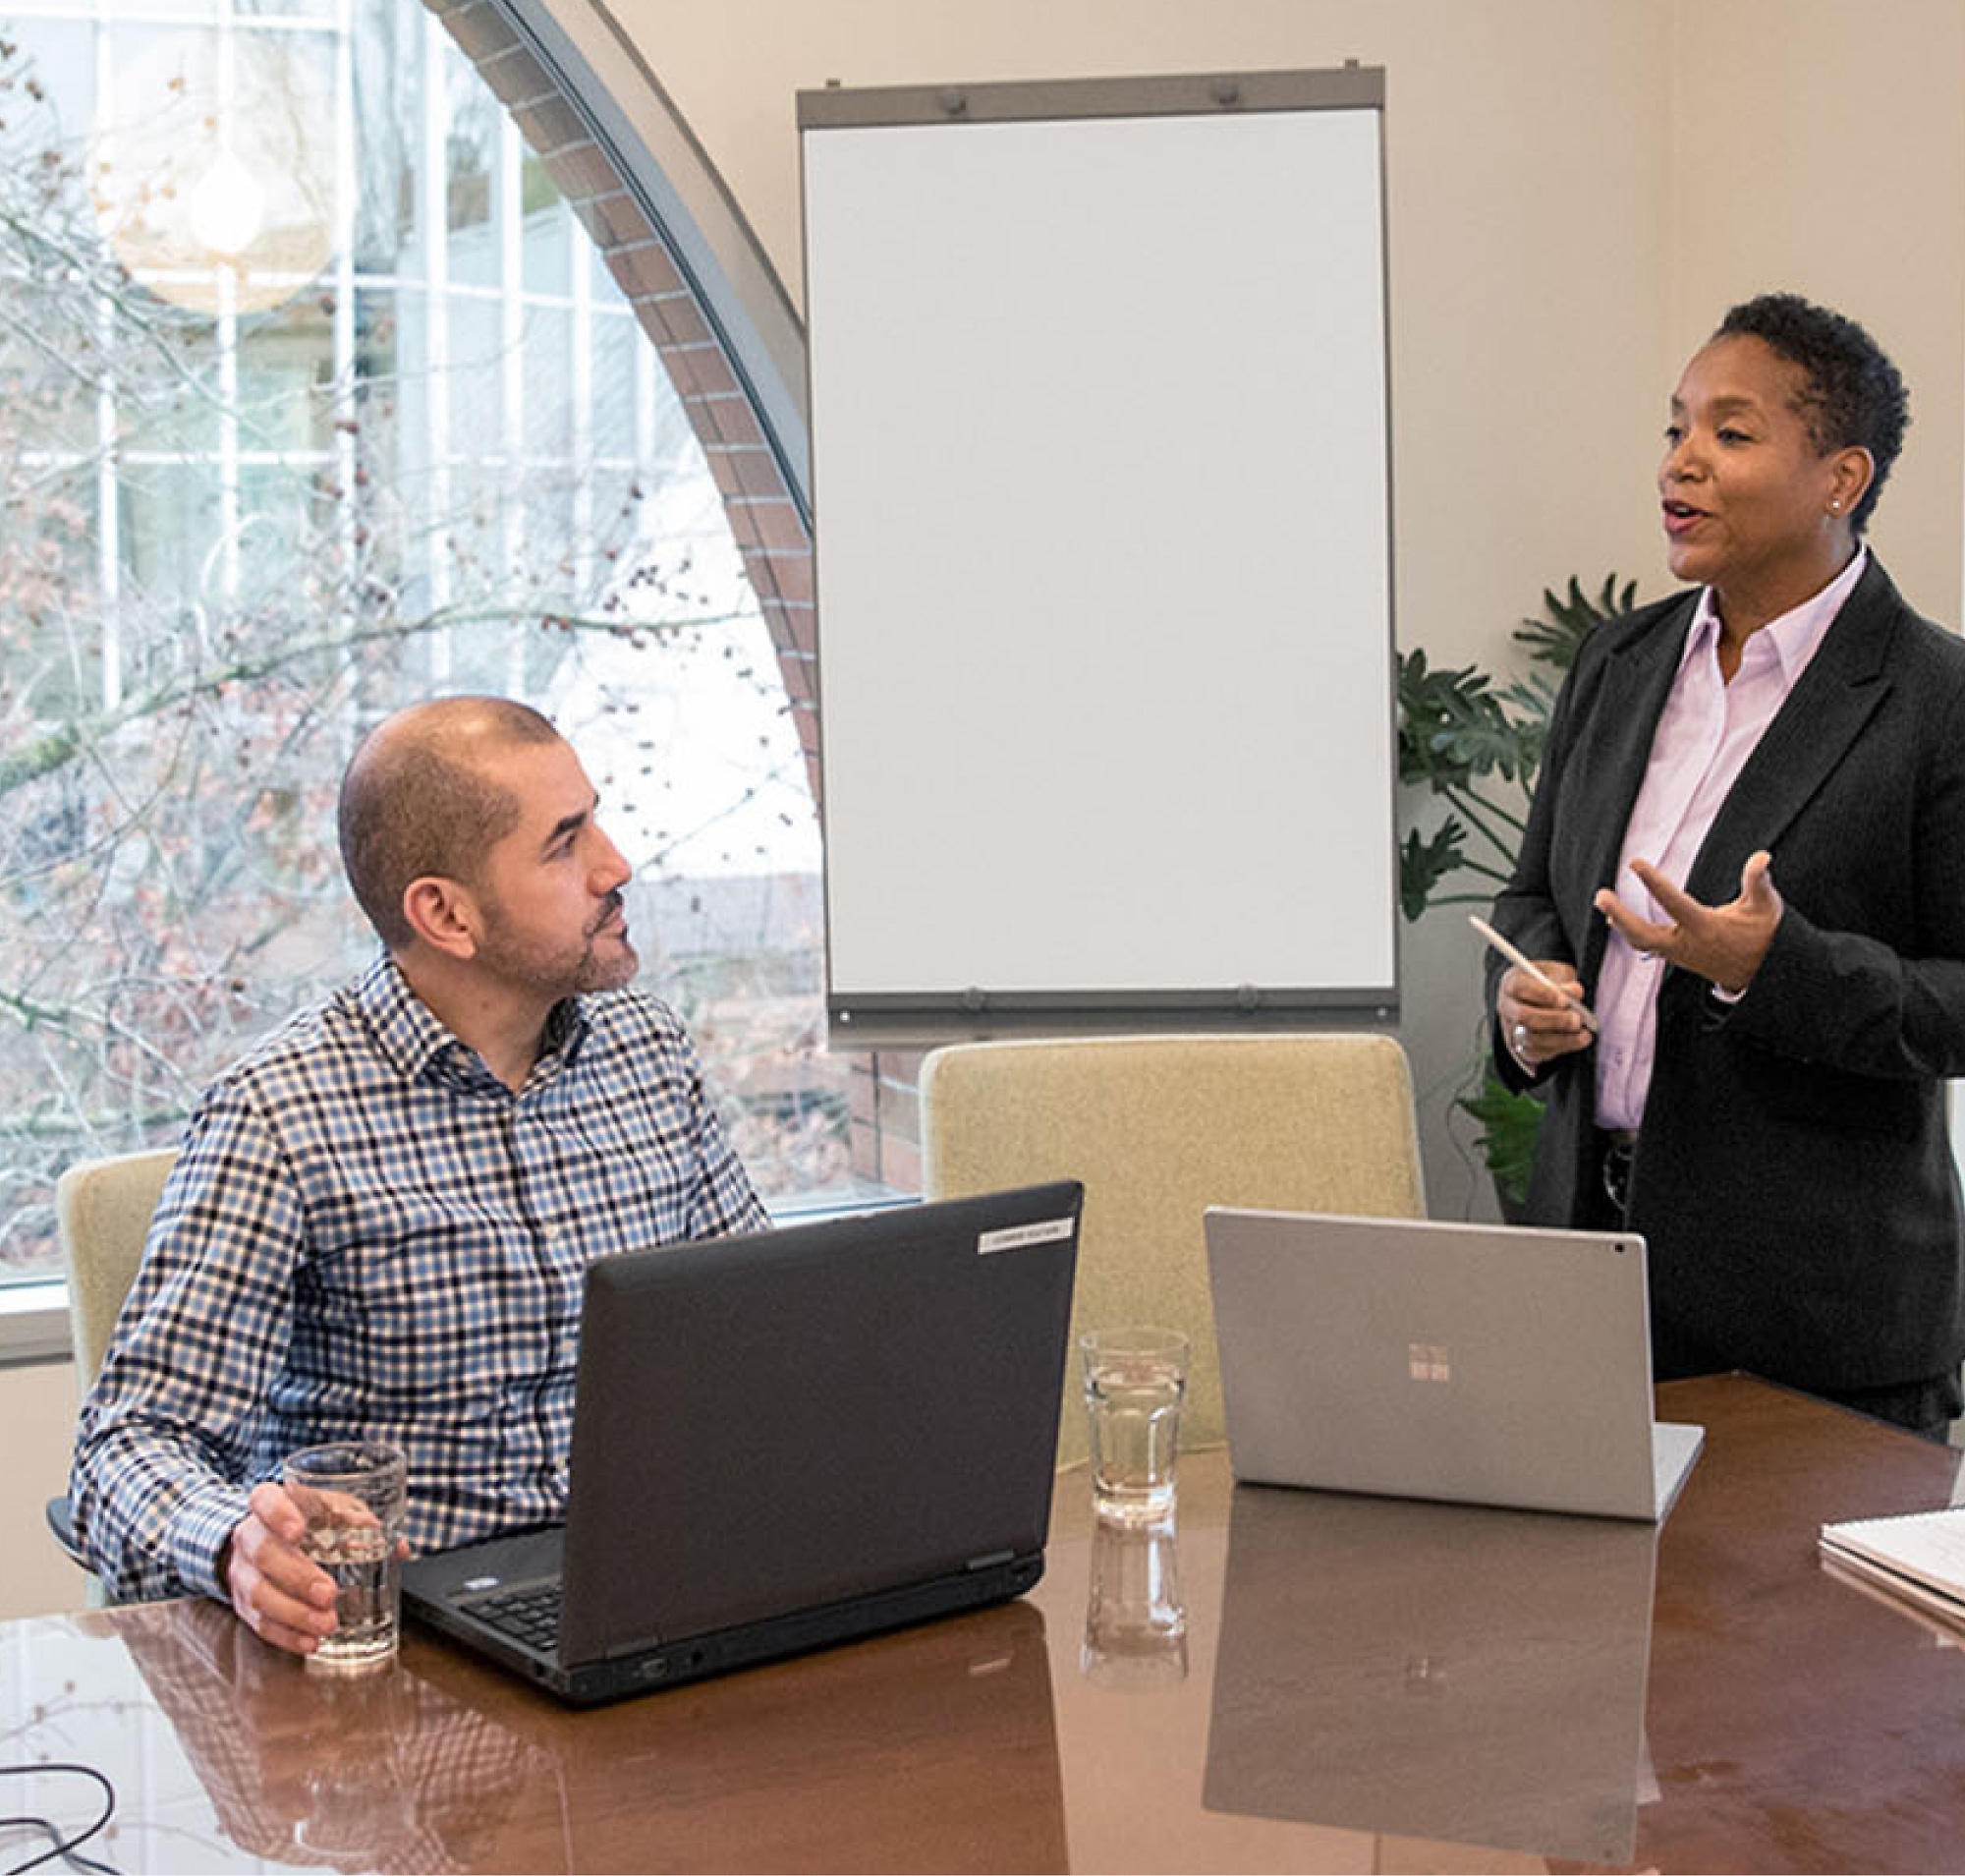 Deux professionnels en salle de réunion, l’un debout faisant une présentation et l’autre assis à une table avec des ordinateurs portables, devant un tableau blanc.